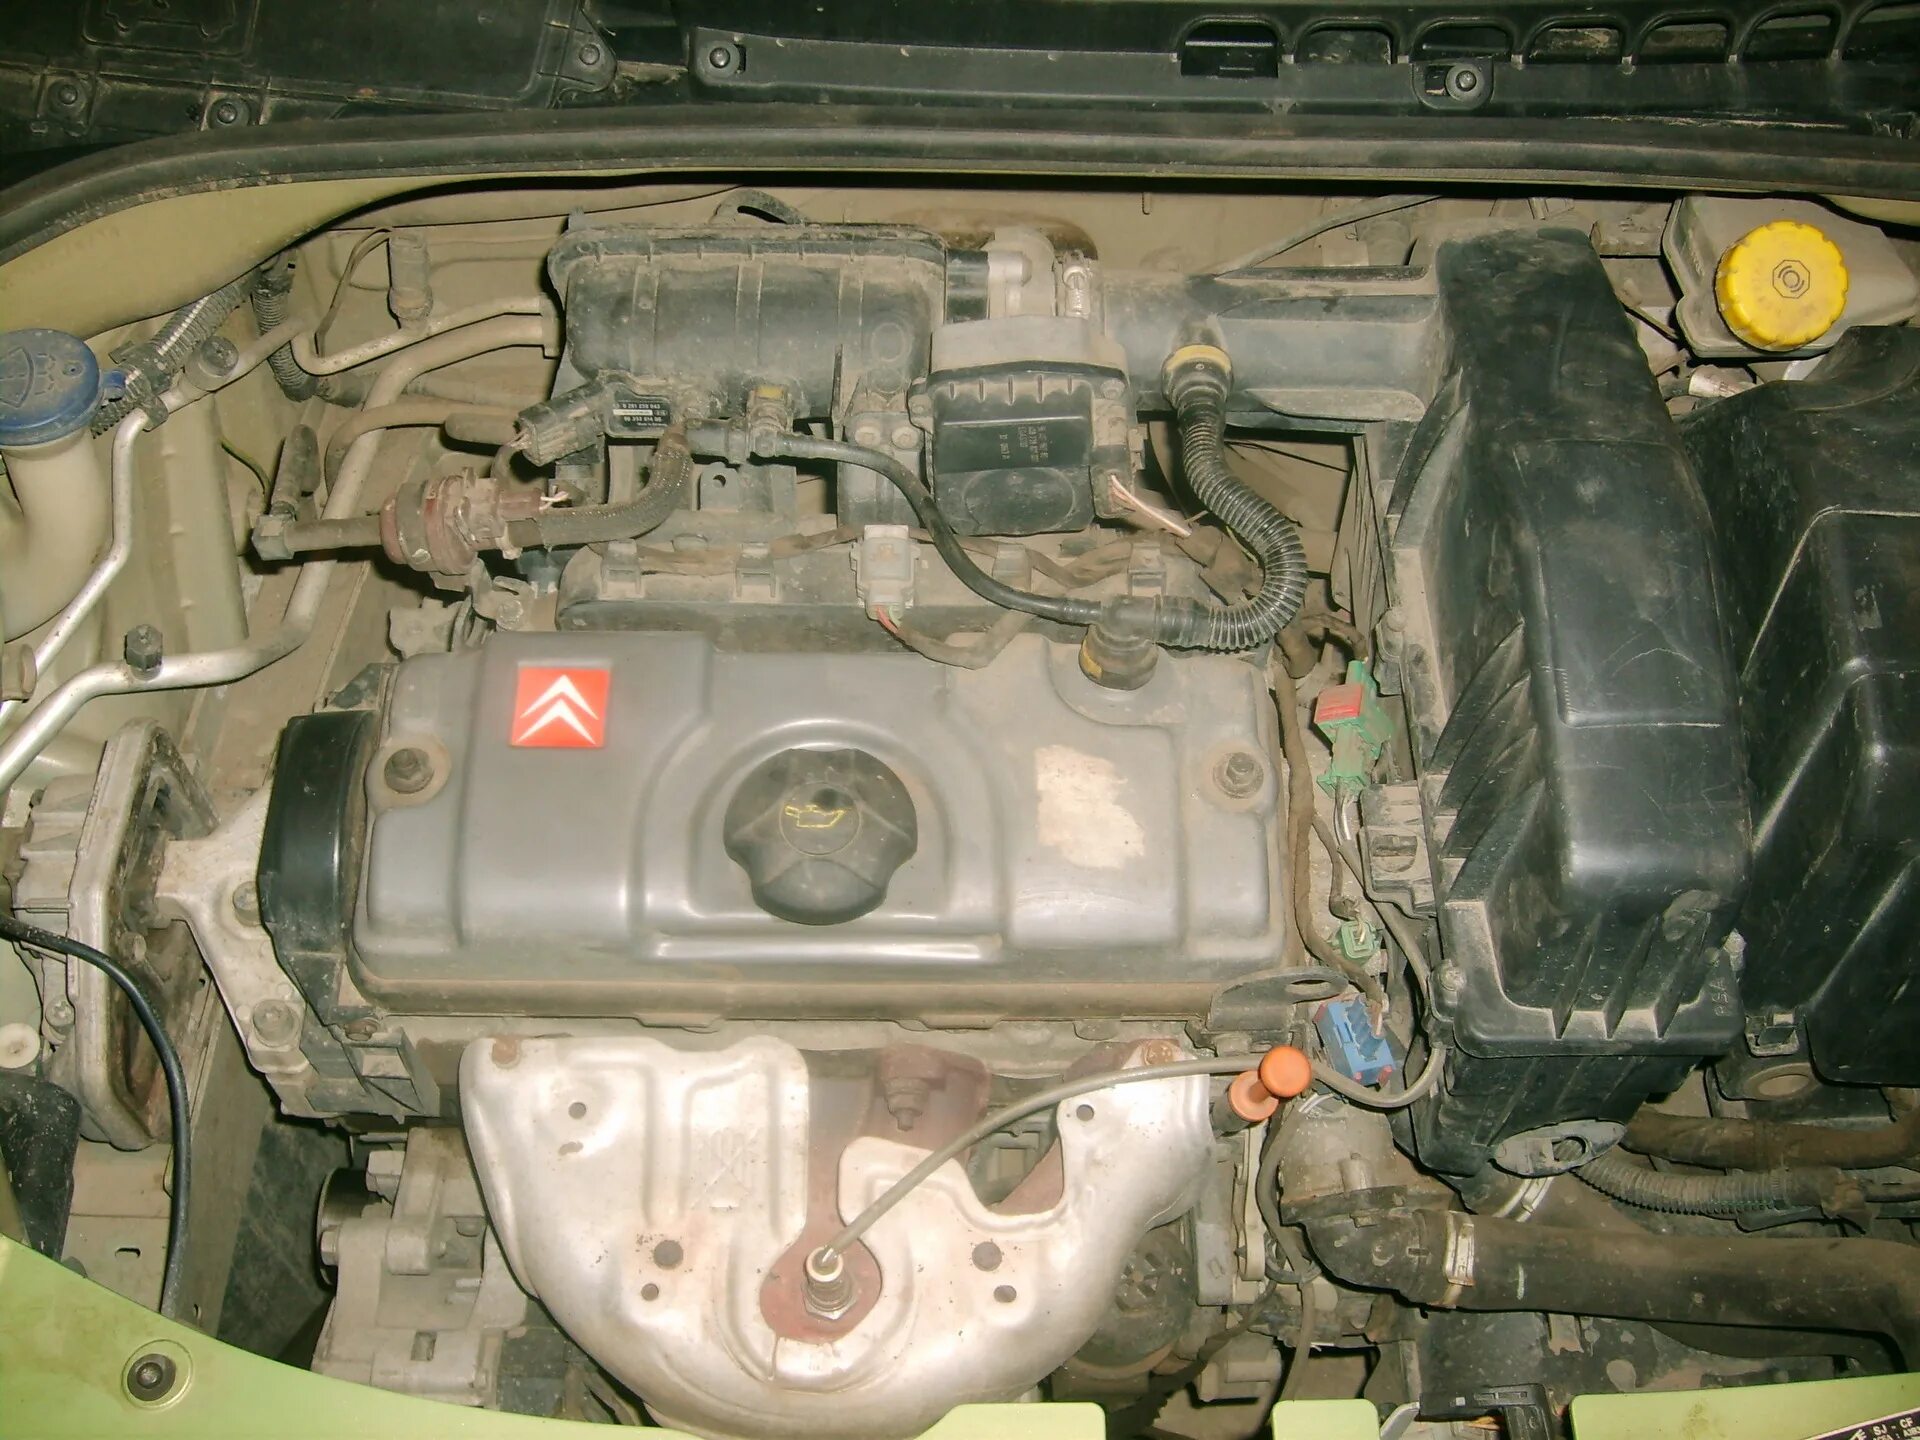 Двигатель Ситроен ц3 1.4. Citroen c3 мотор. Фильтр для замены масла Ситроен с 3 2003 г объем 1,4. Ситроен ds3 1.4 замена масляного фильтра.